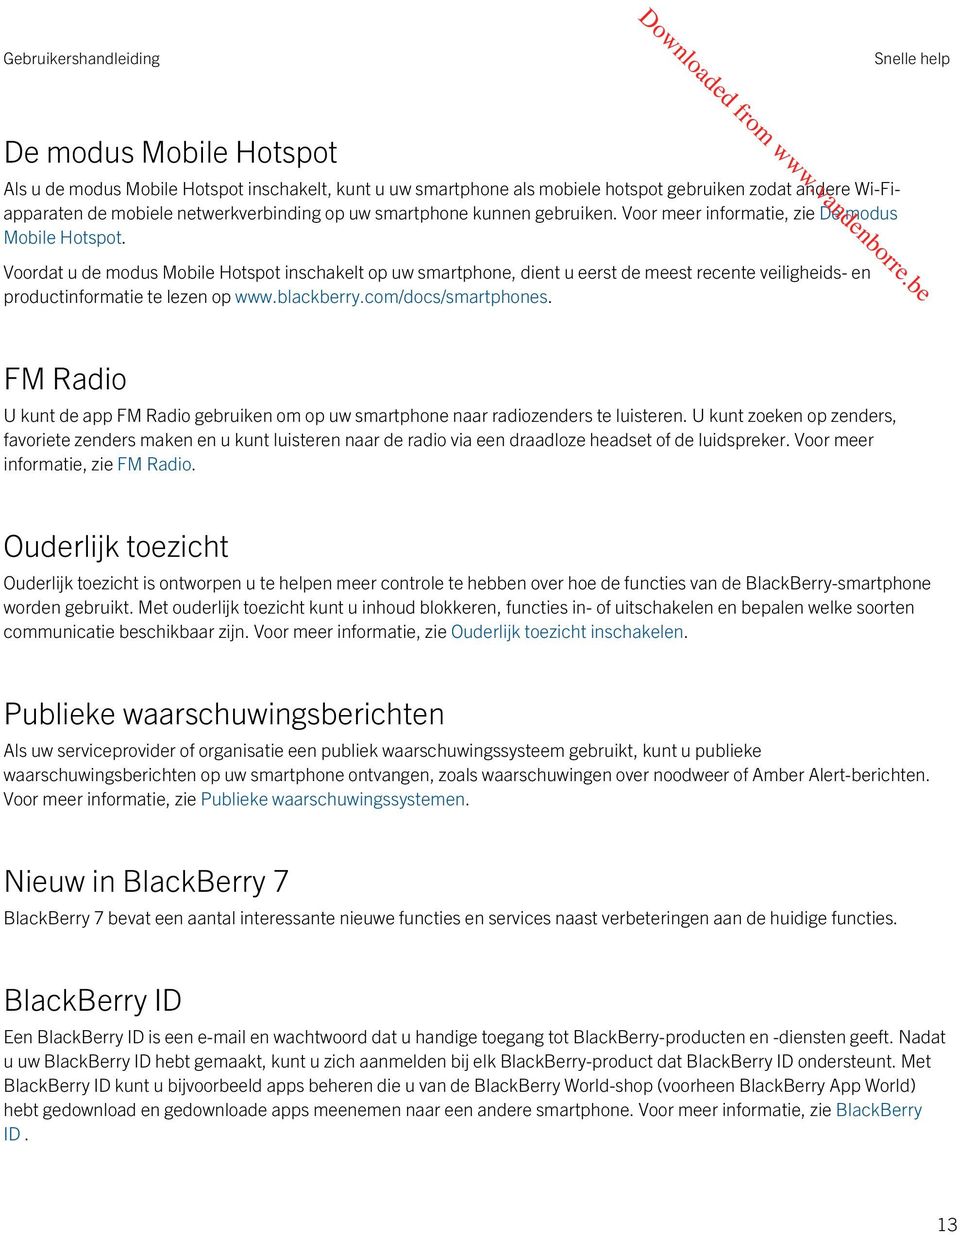 Voordat u de modus Mobile Hotspot inschakelt op uw smartphone, dient u eerst de meest recente veiligheids- en productinformatie te lezen op www.blackberry.com/docs/smartphones.